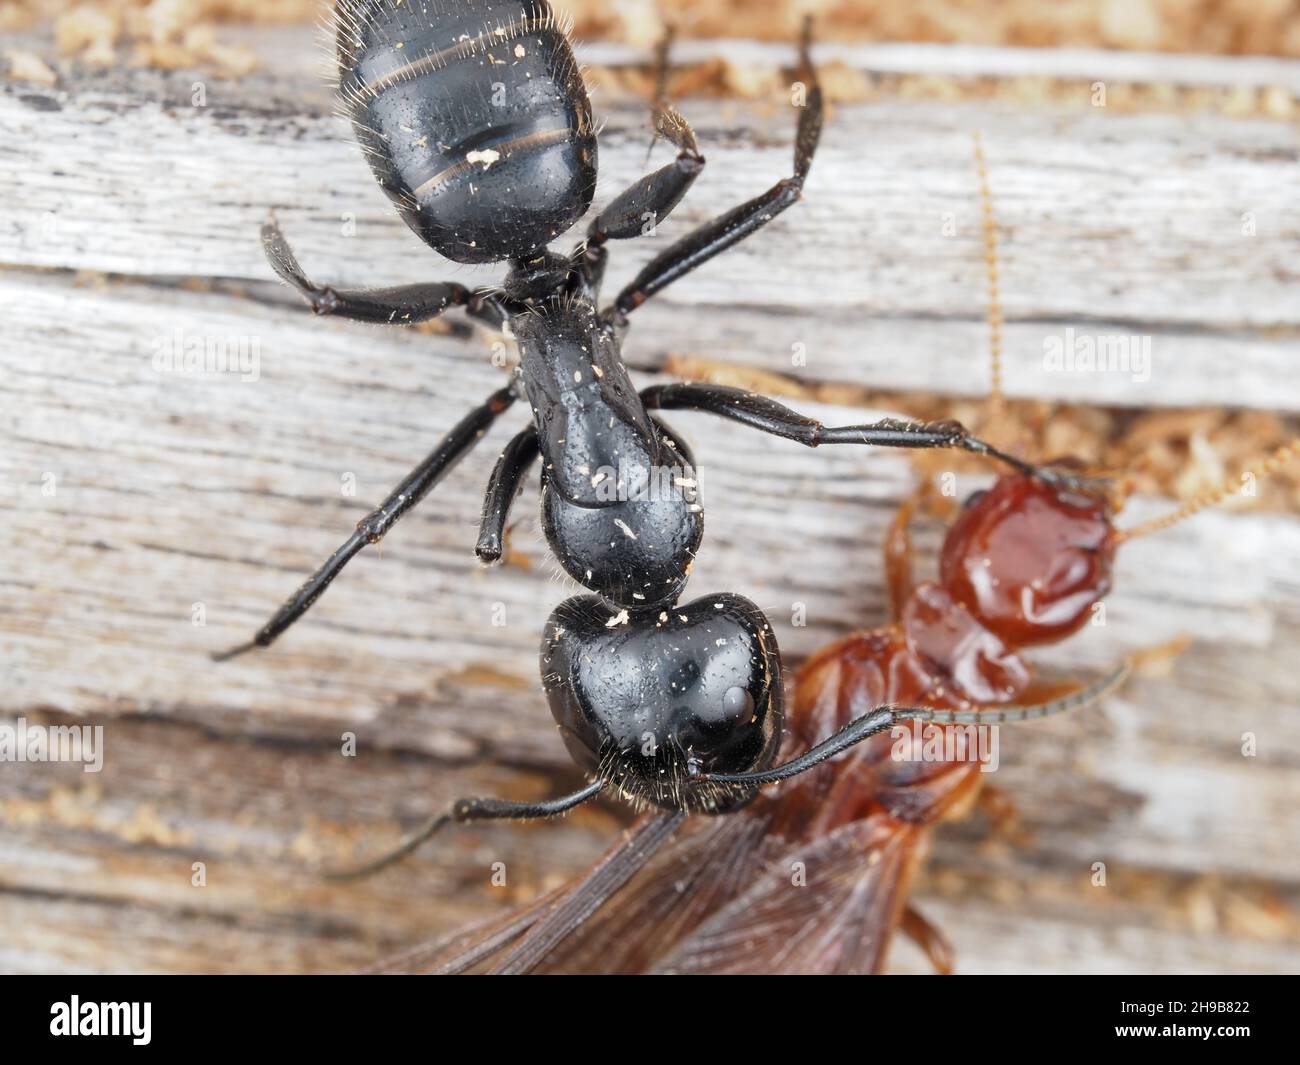 Hormiga carpintero luchando contra una termita de madera de dampwood Foto de stock